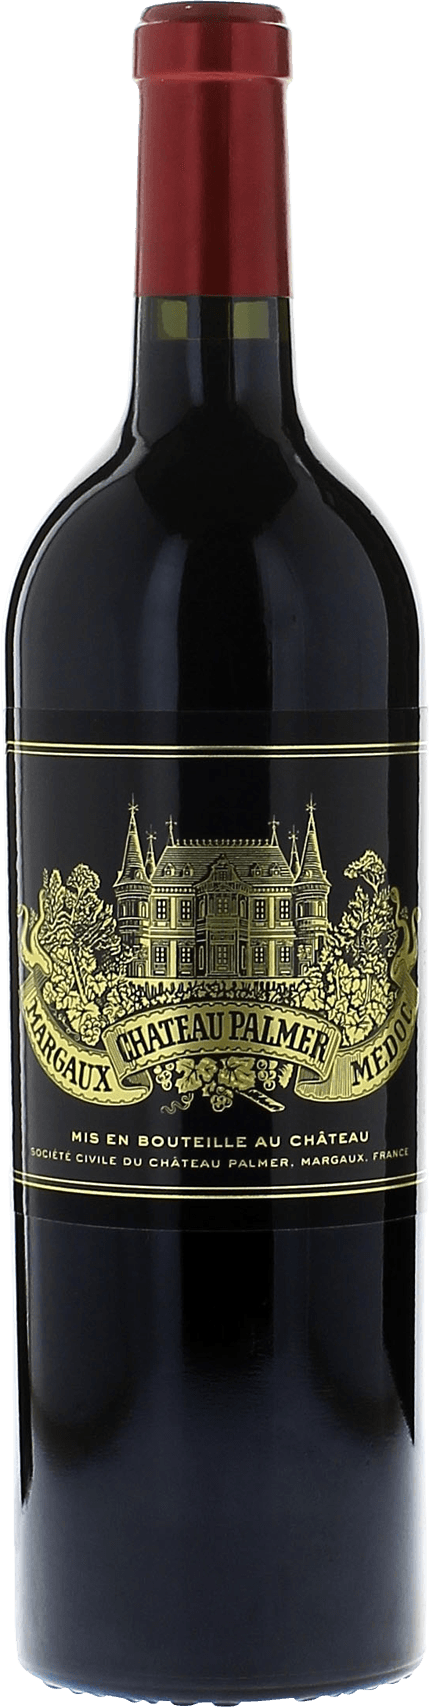 Palmer 2016 3me Grand cru class Margaux, Bordeaux rouge